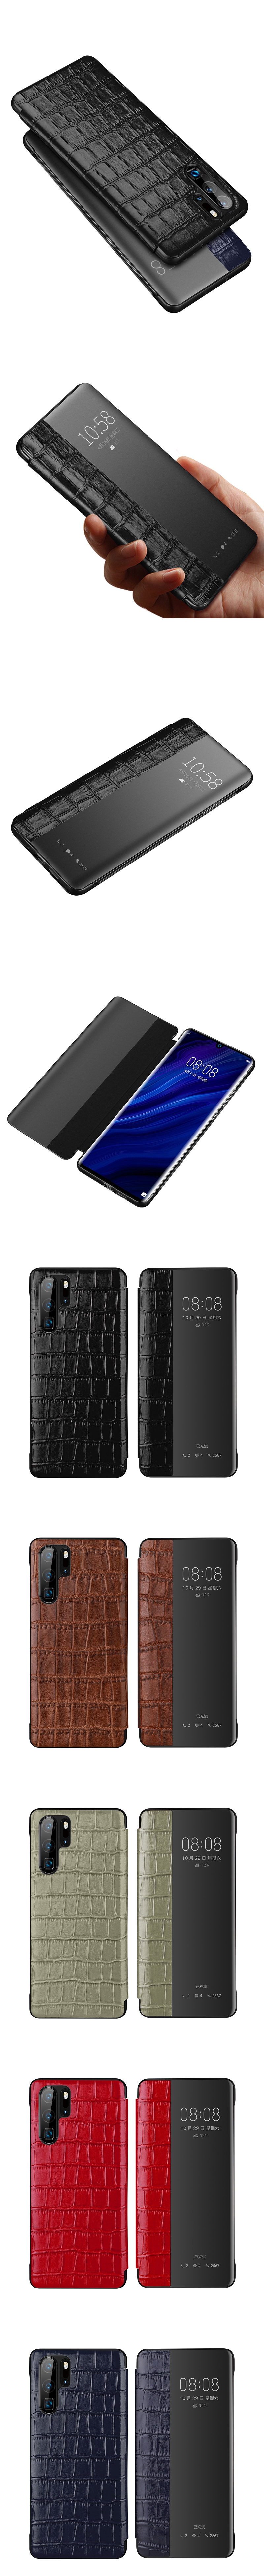 799-Huawei-真皮鱷魚紋智能皮套來電顯示視窗保護套